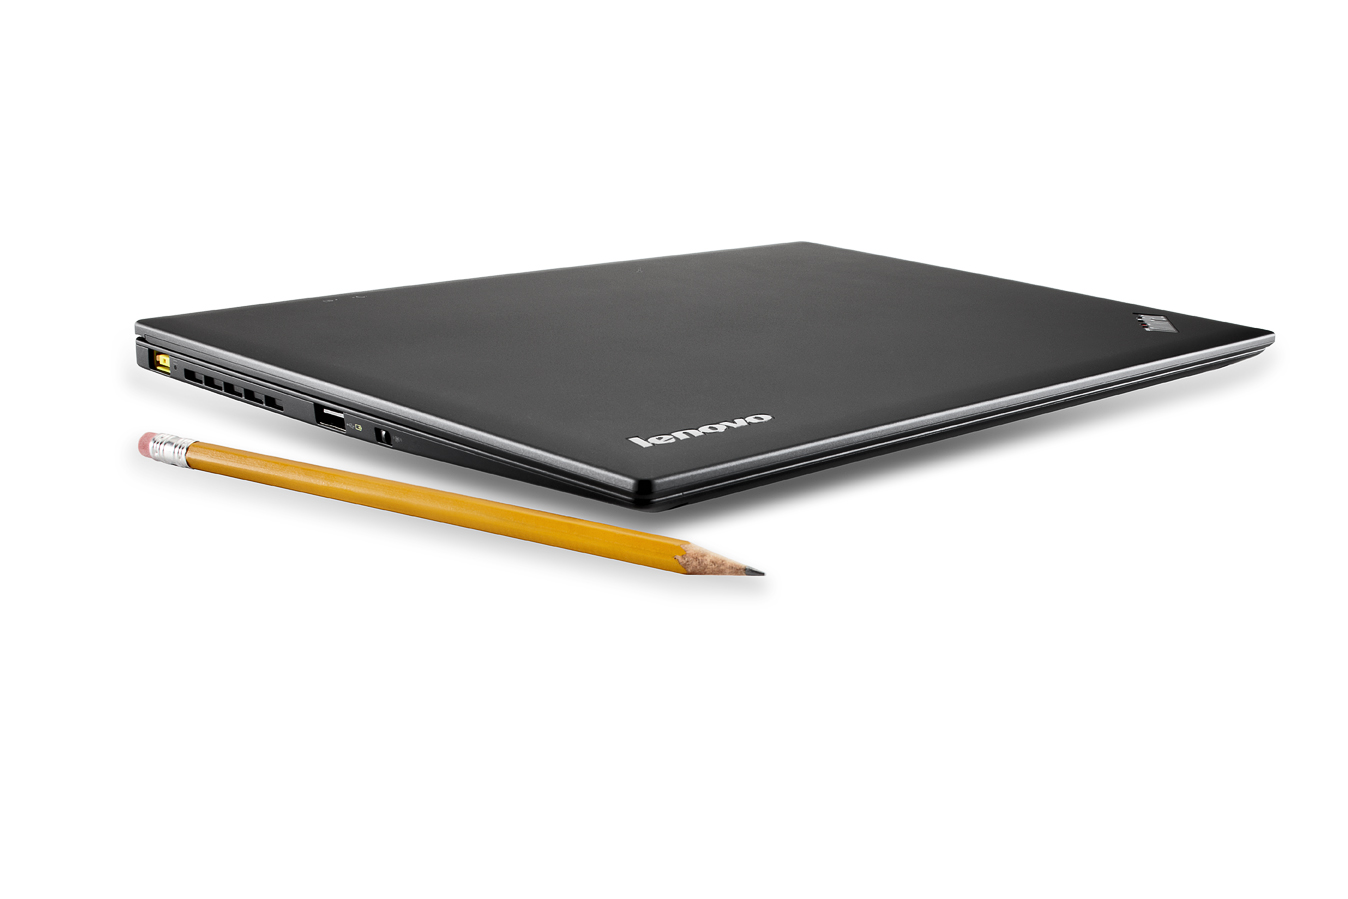 The Lenovo X1 Carbon Ultrabook